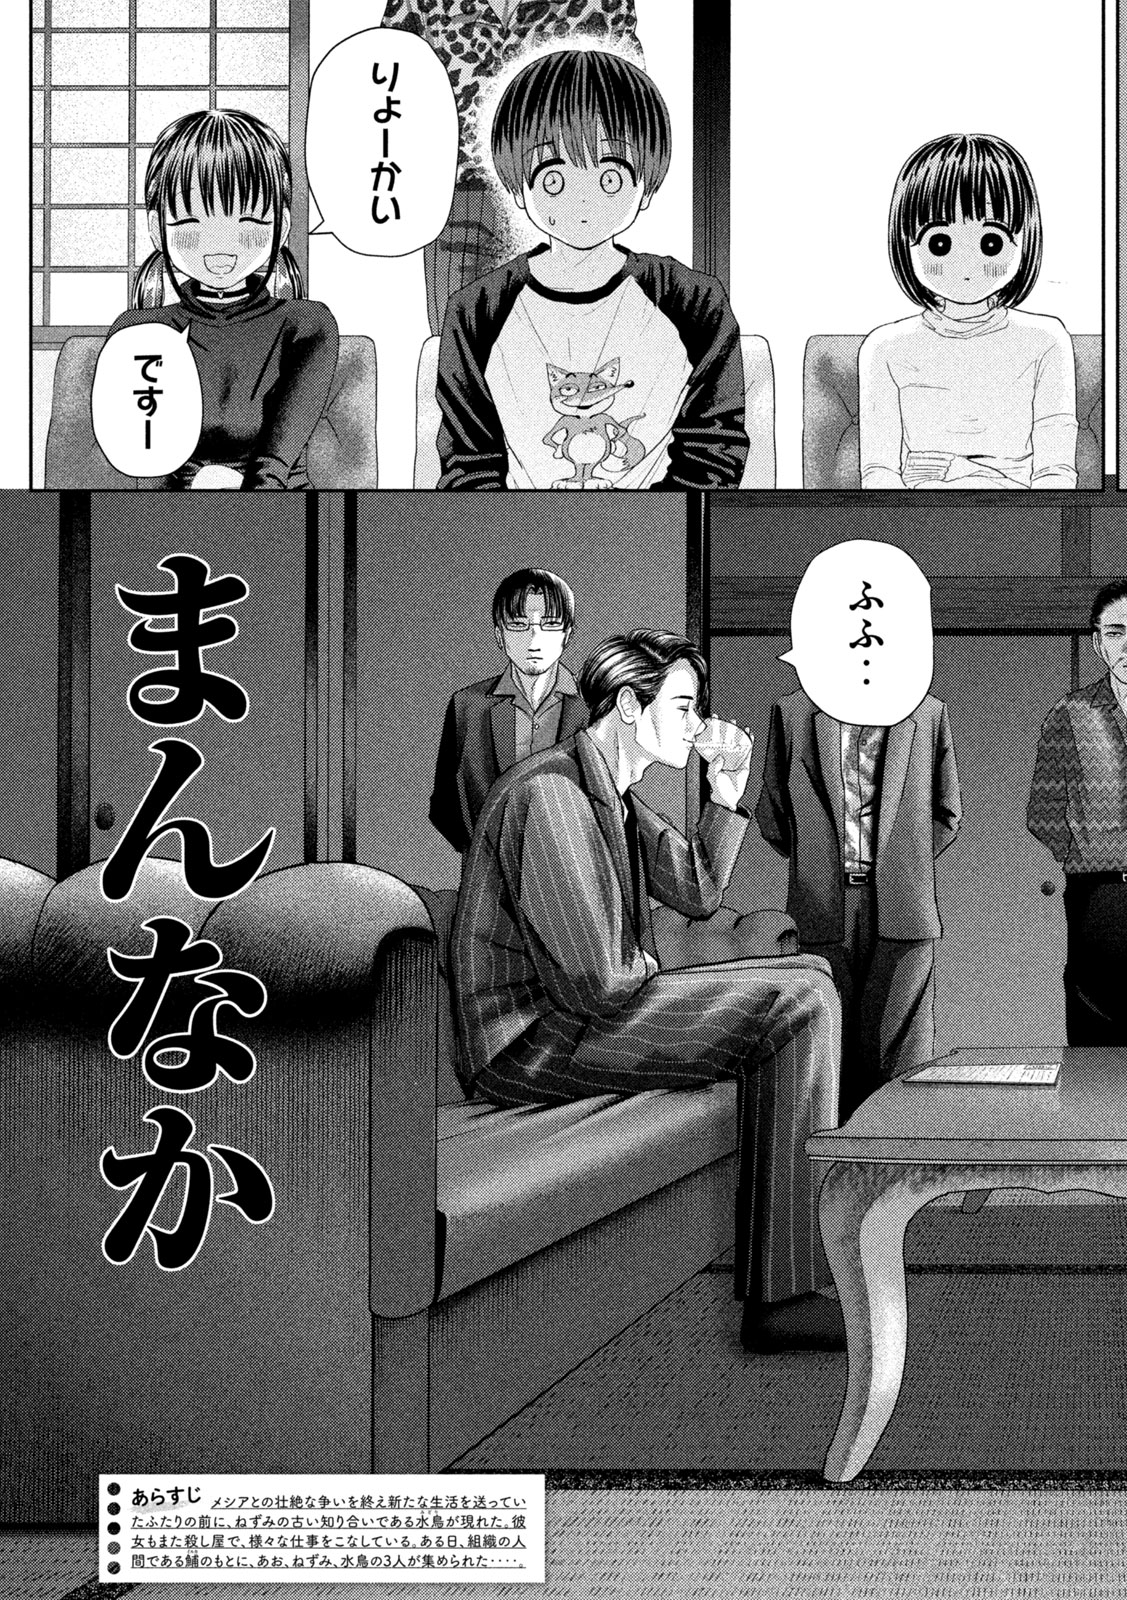 Nezumi no Koi - Chapter 31 - Page 3